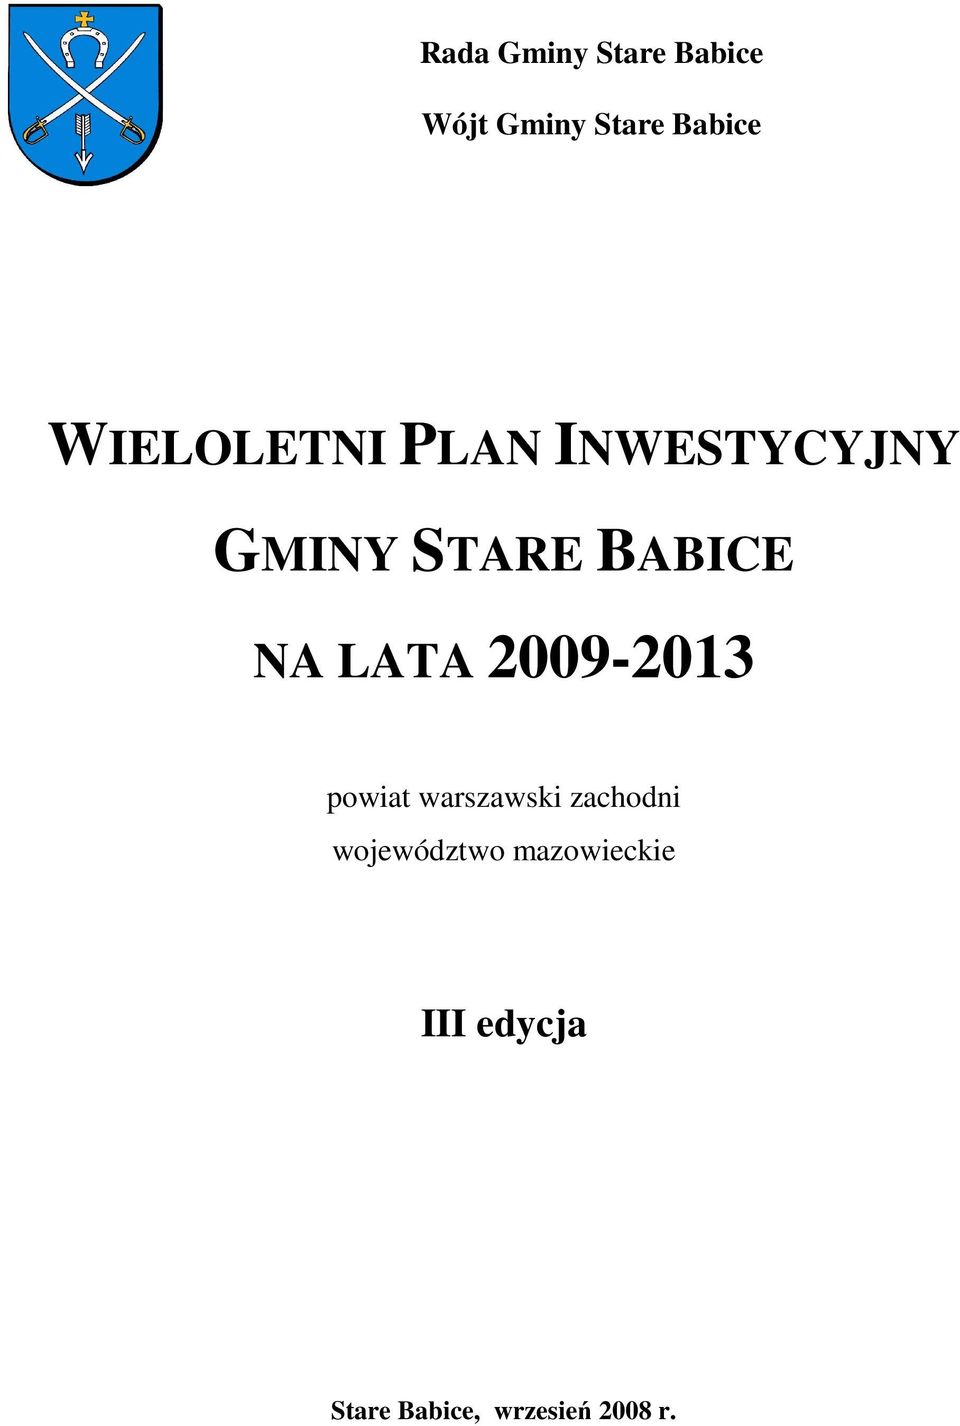 LATA 2009-2013 powiat warszawski zachodni